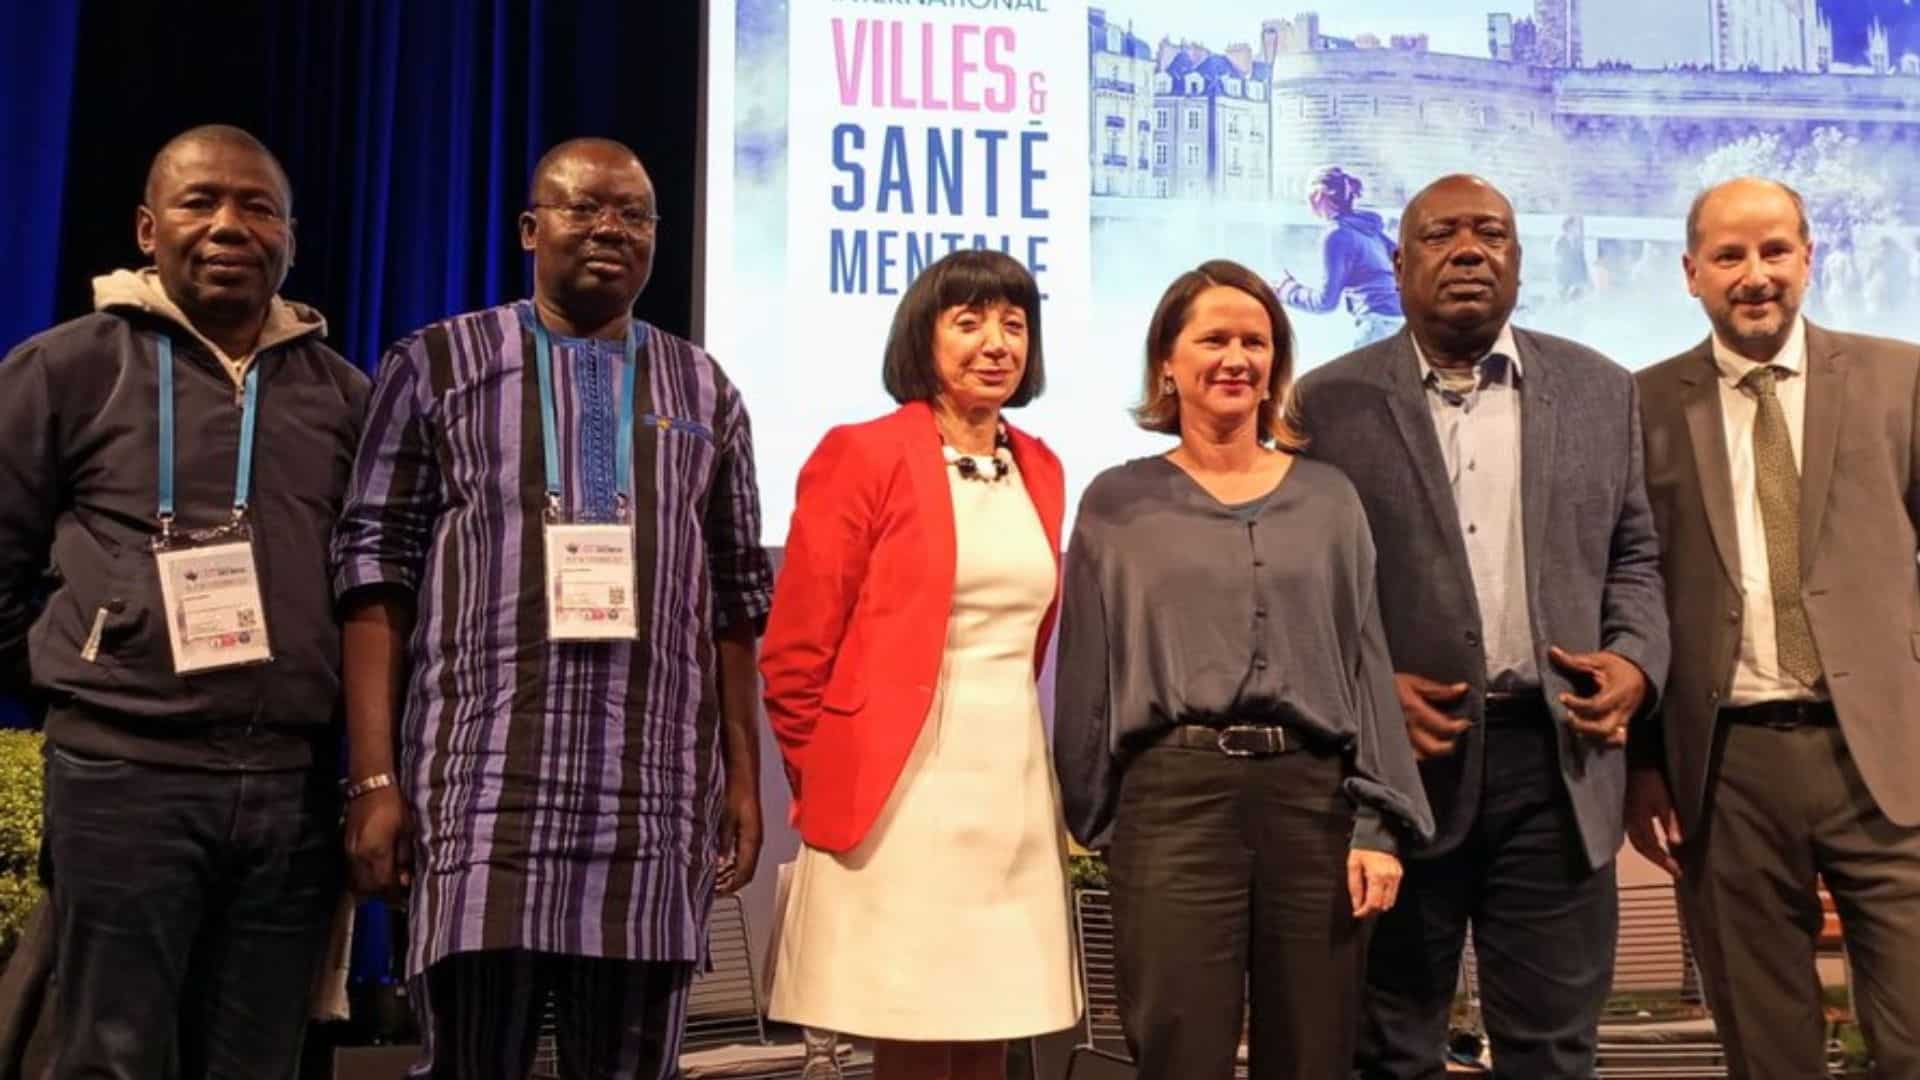 Africains et Européens partagent leurs expériences lors du colloque international ”Villes et santé mentale” à Nantes